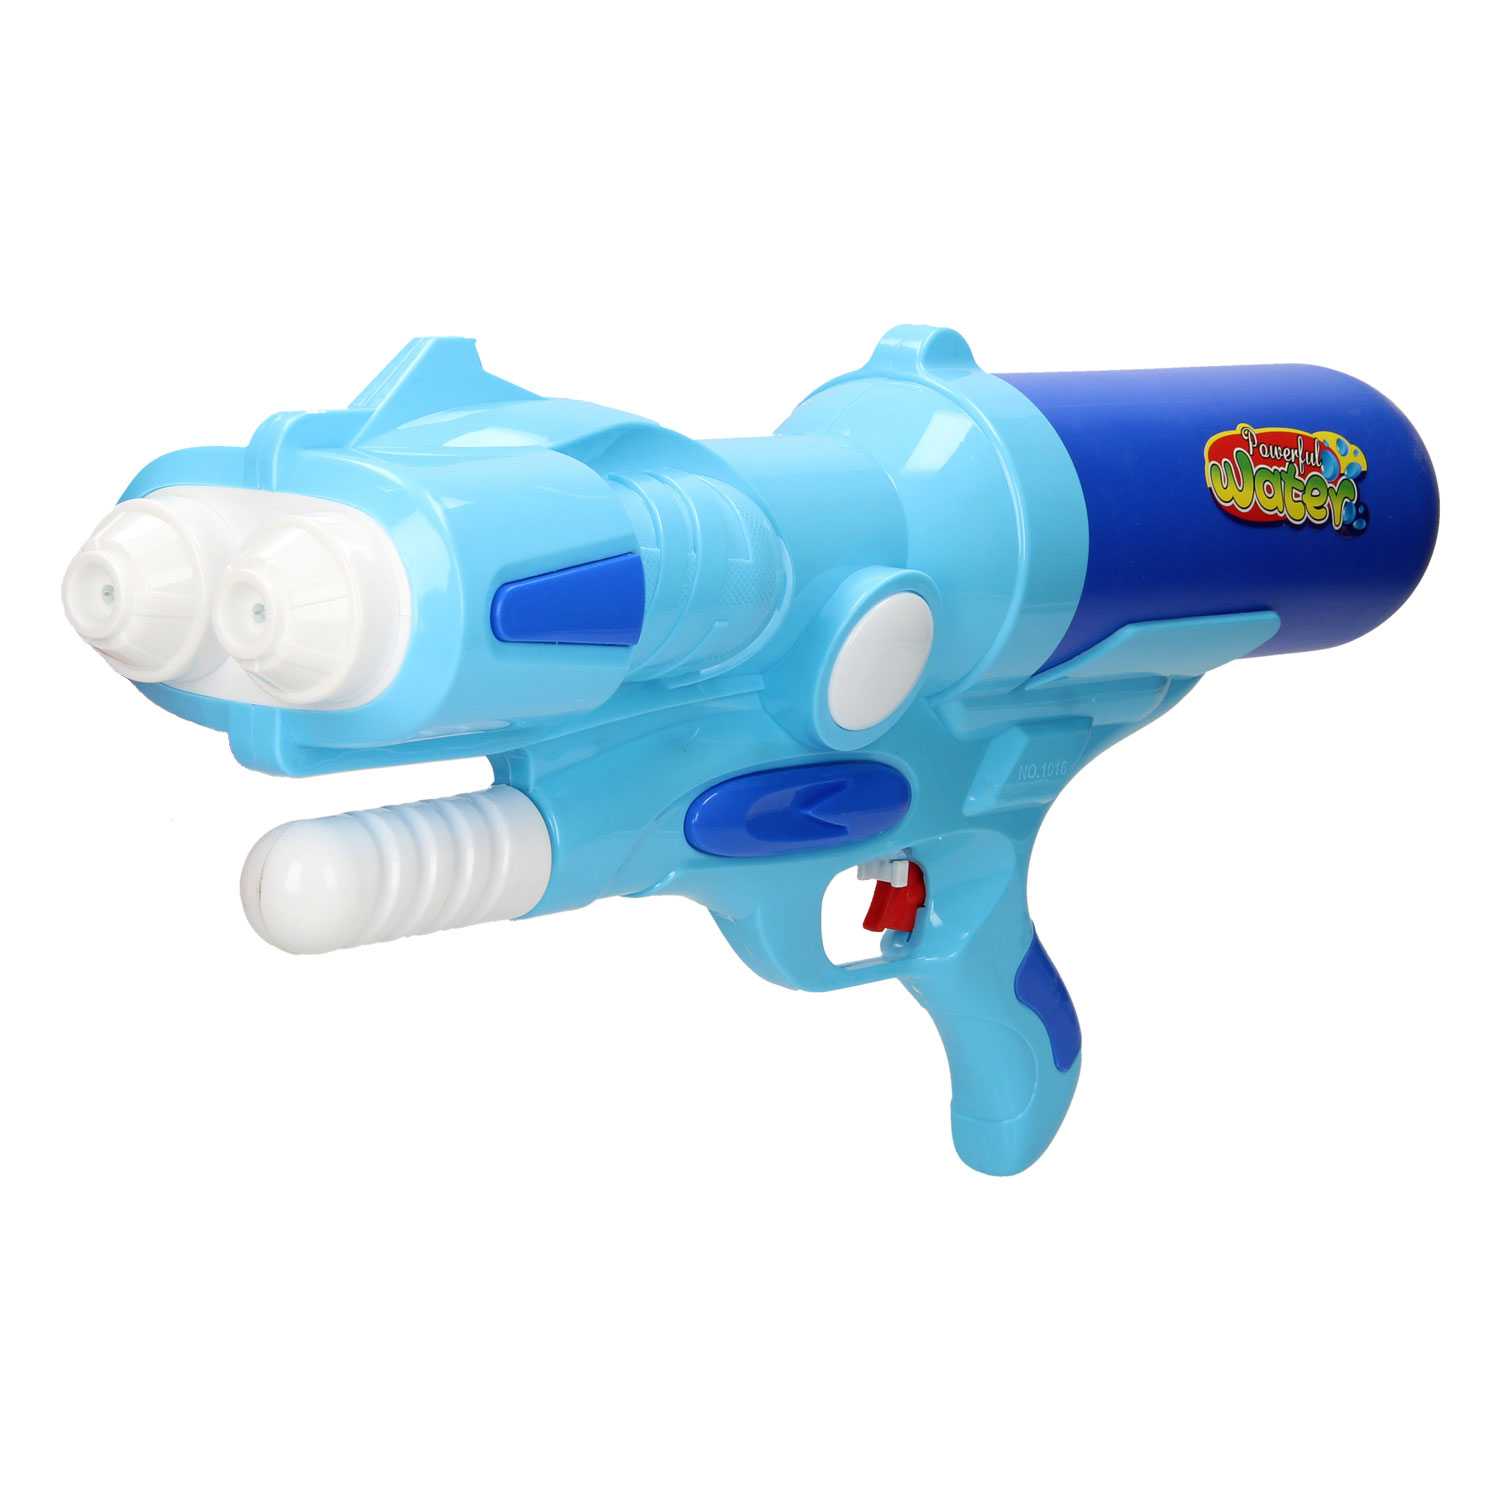 Wasserpistole in der Farbe OVP blau und Neu Wasserspielzeug 